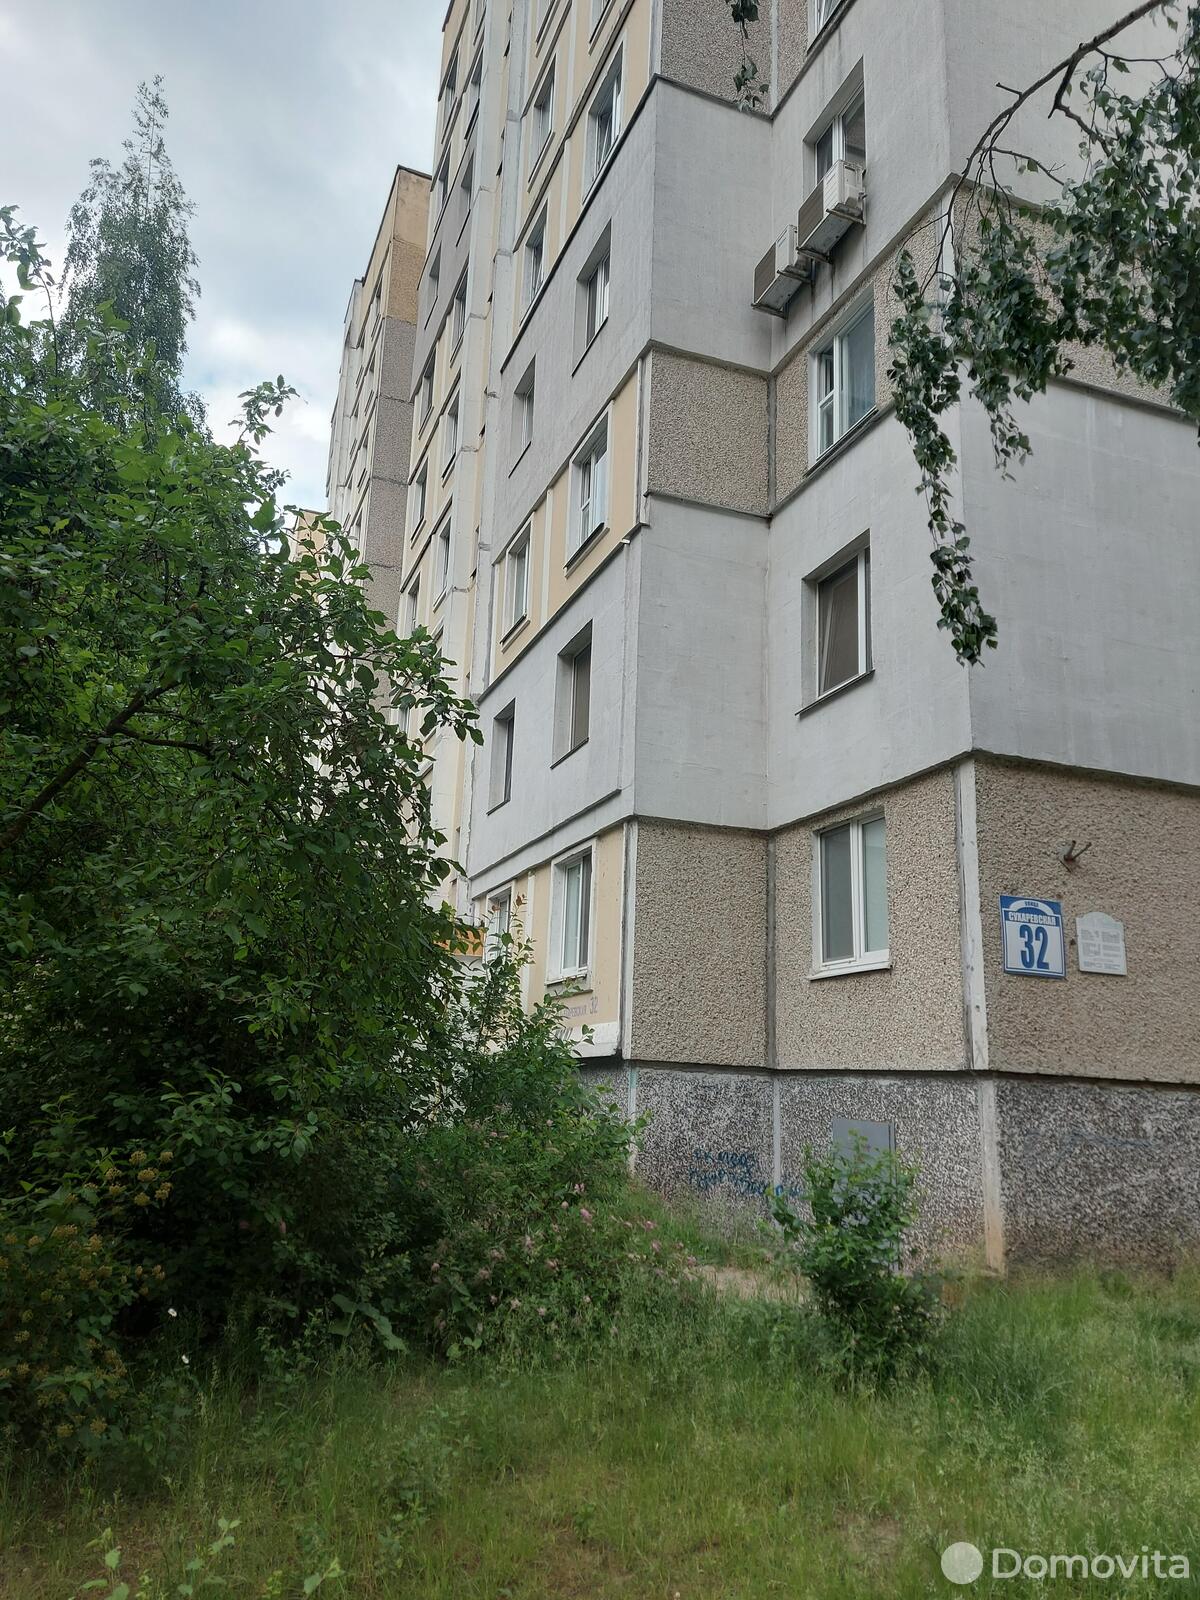 Цена продажи квартиры, Минск, ул. Сухаревская, д. 32